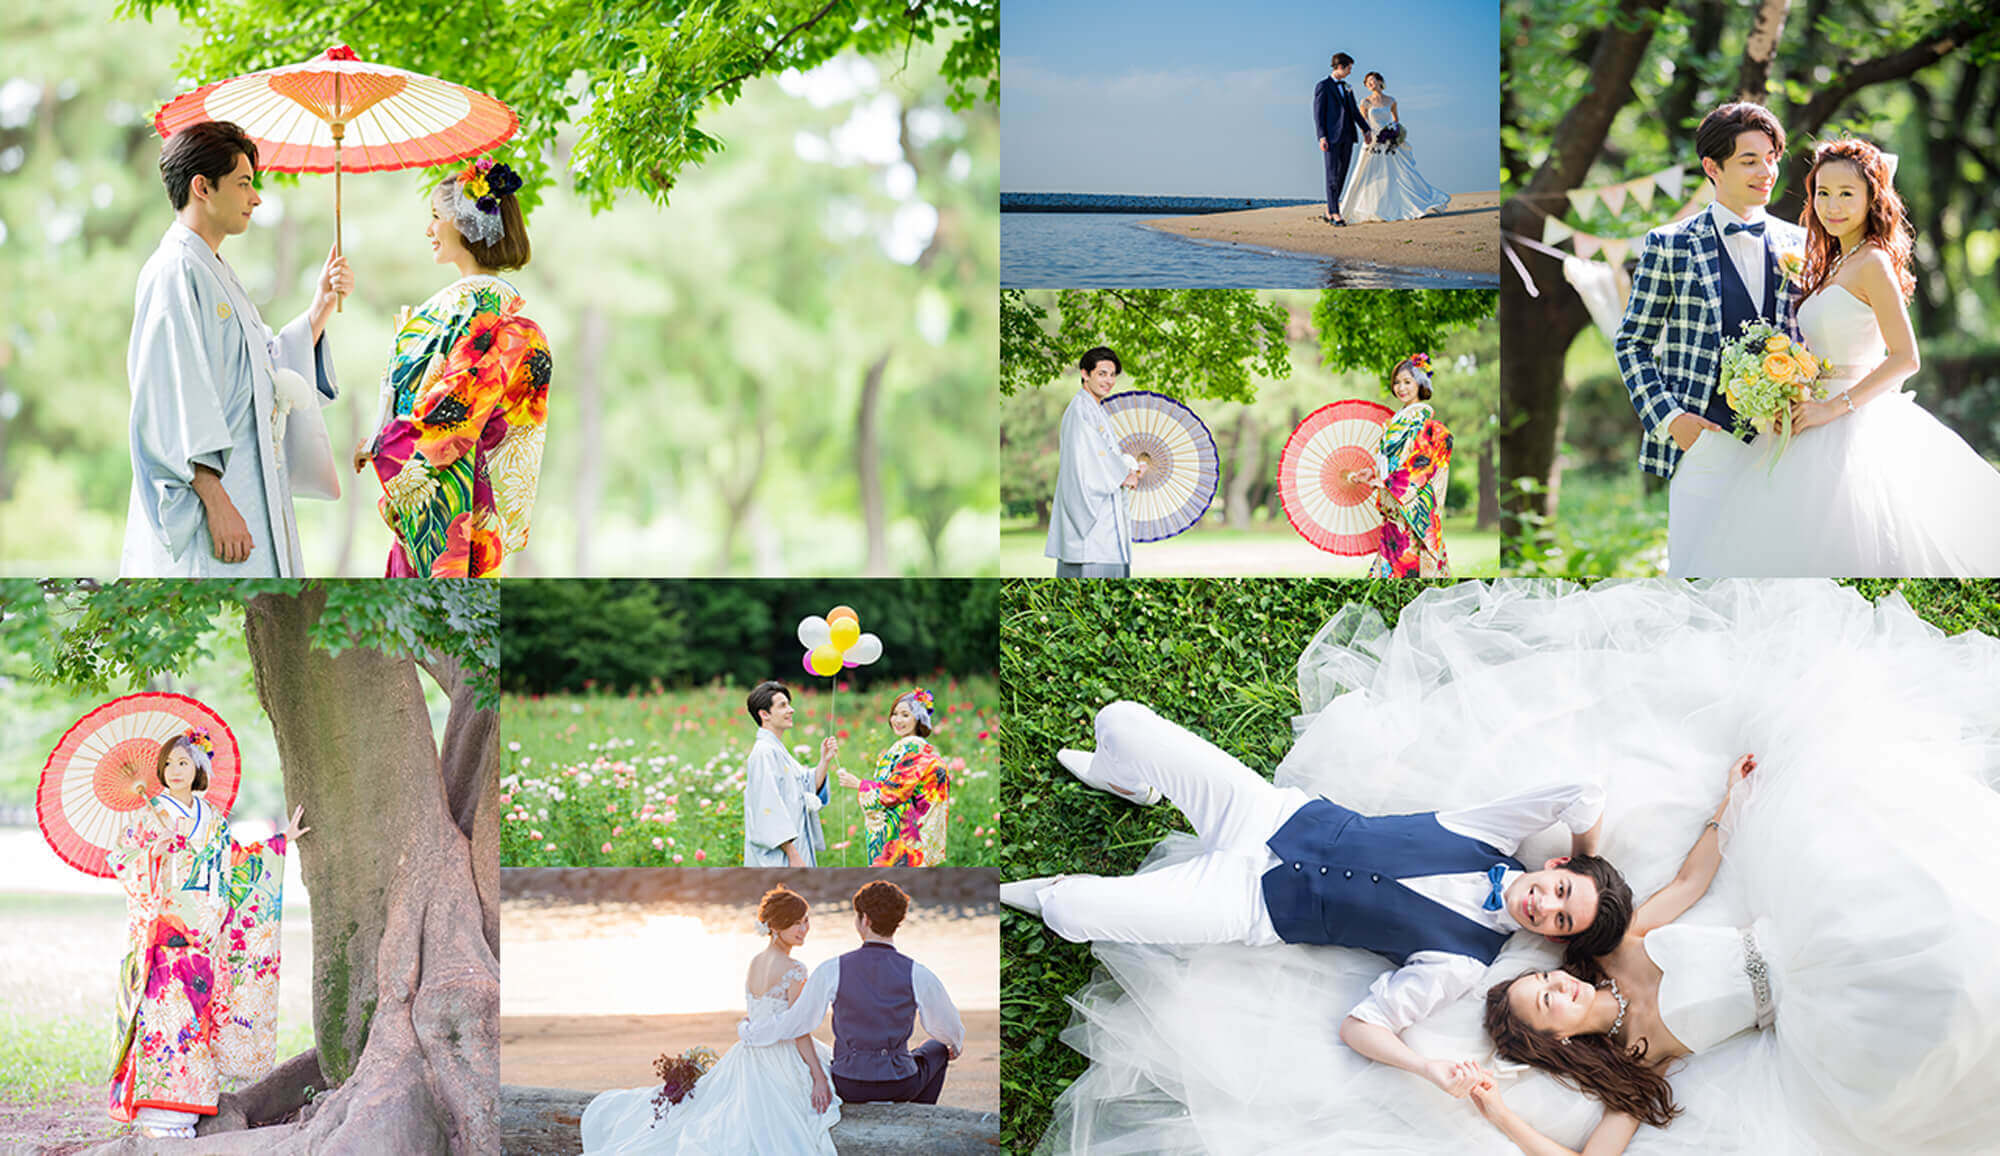 和装姿のカップルが番傘を持って緑鮮やかな公園で撮影をしている様子や、洋装姿のカップルが海辺で見つめ合いながら寄り添って撮影をしている様子など、名古屋を中心として展開するマイブライドのロケーションフォトのイメージ